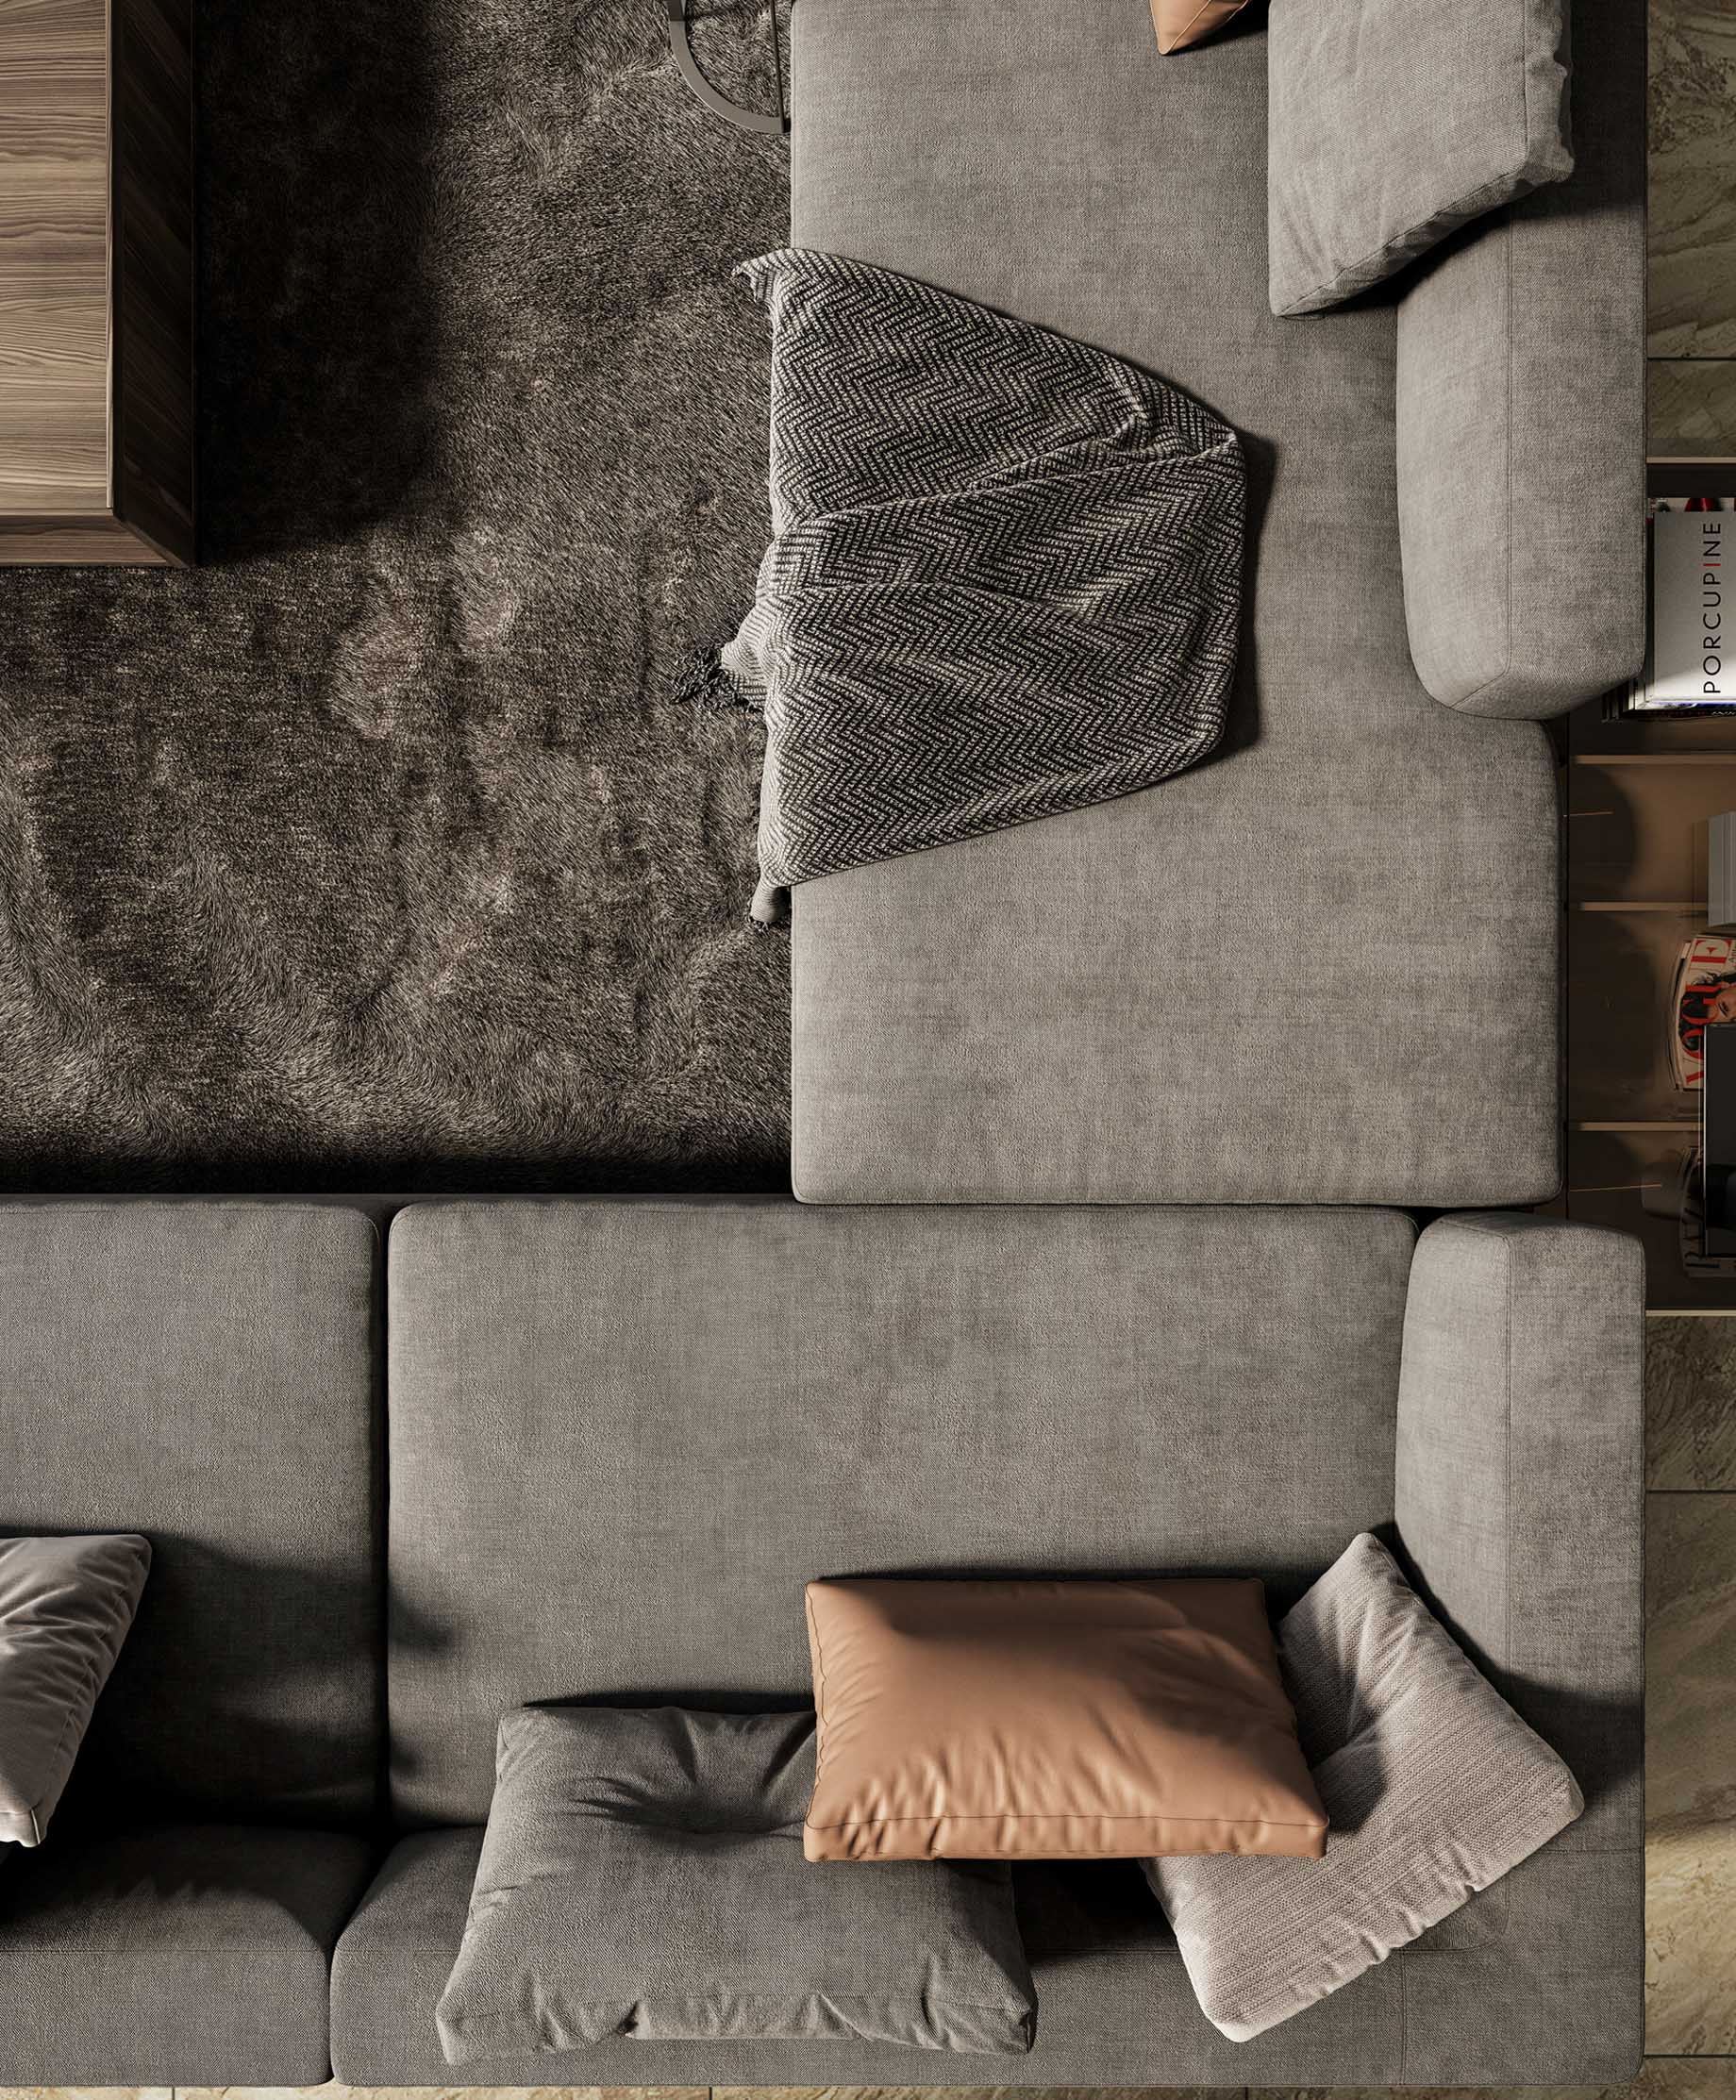 Gold List 2020: Design Studio MA | Luxe Interiors + Design